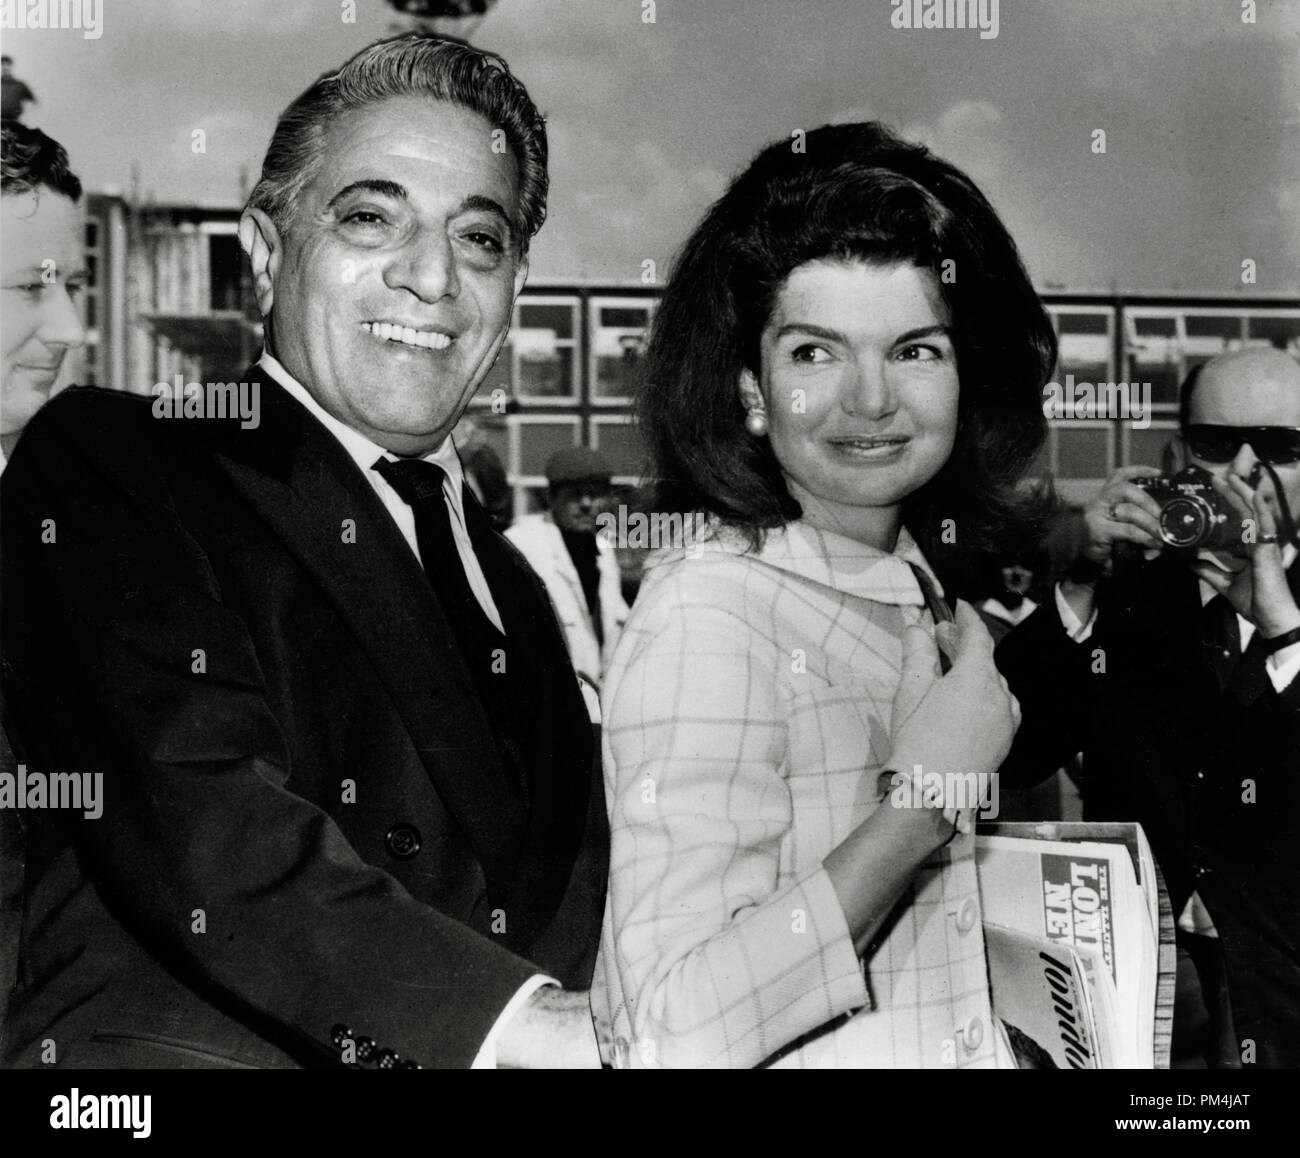 Aristotele Onassis con sua moglie Jacqueline Bouvier Kennedy, circa 1968 Riferimento File # 1003 643THA Foto Stock